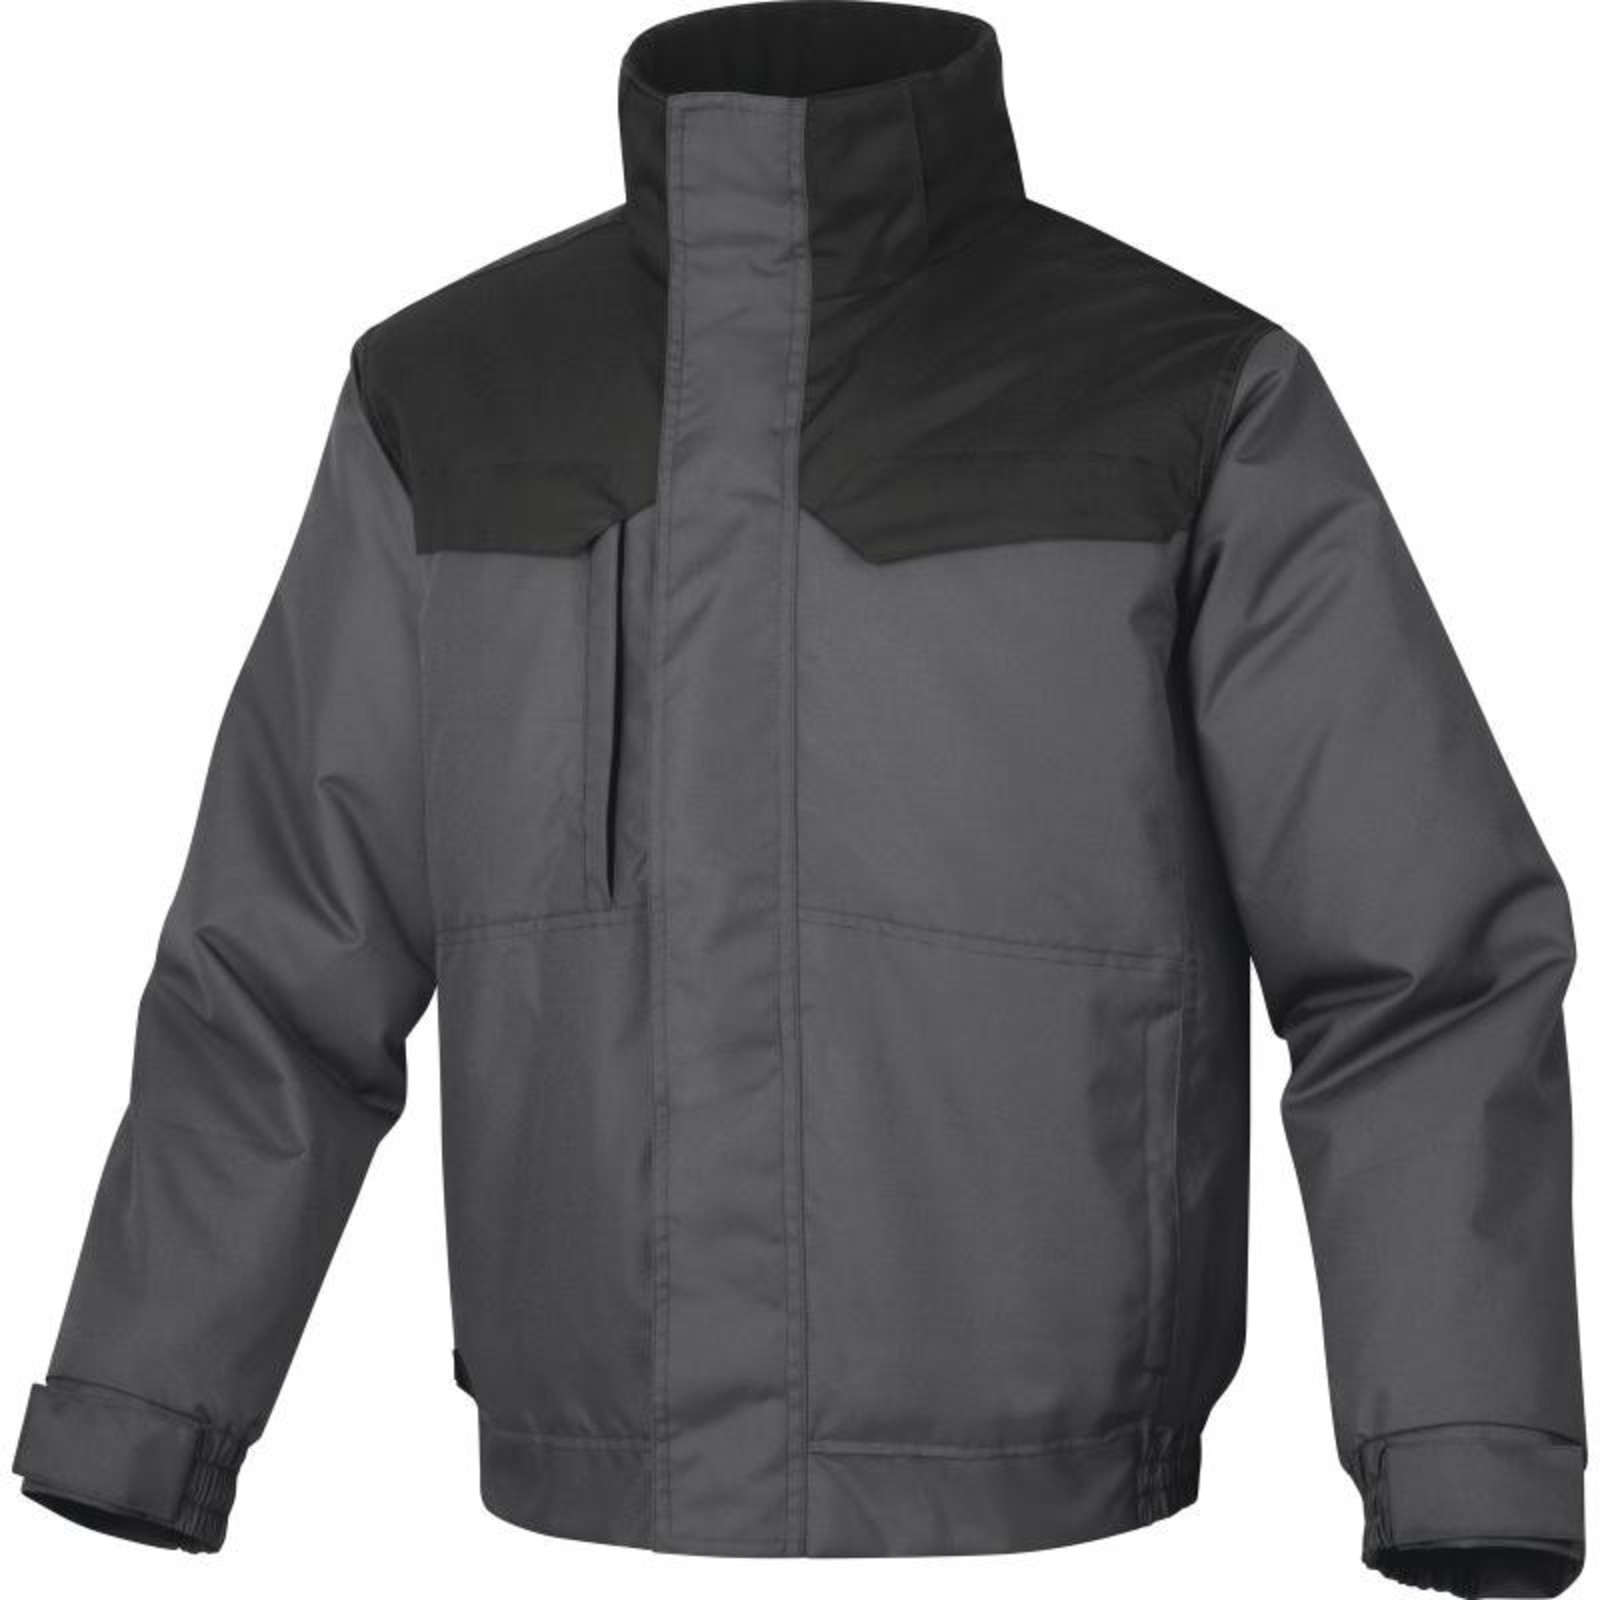 Zimná pánska bunda Delta Plus Northwood3 - veľkosť: L, farba: sivá/čierna